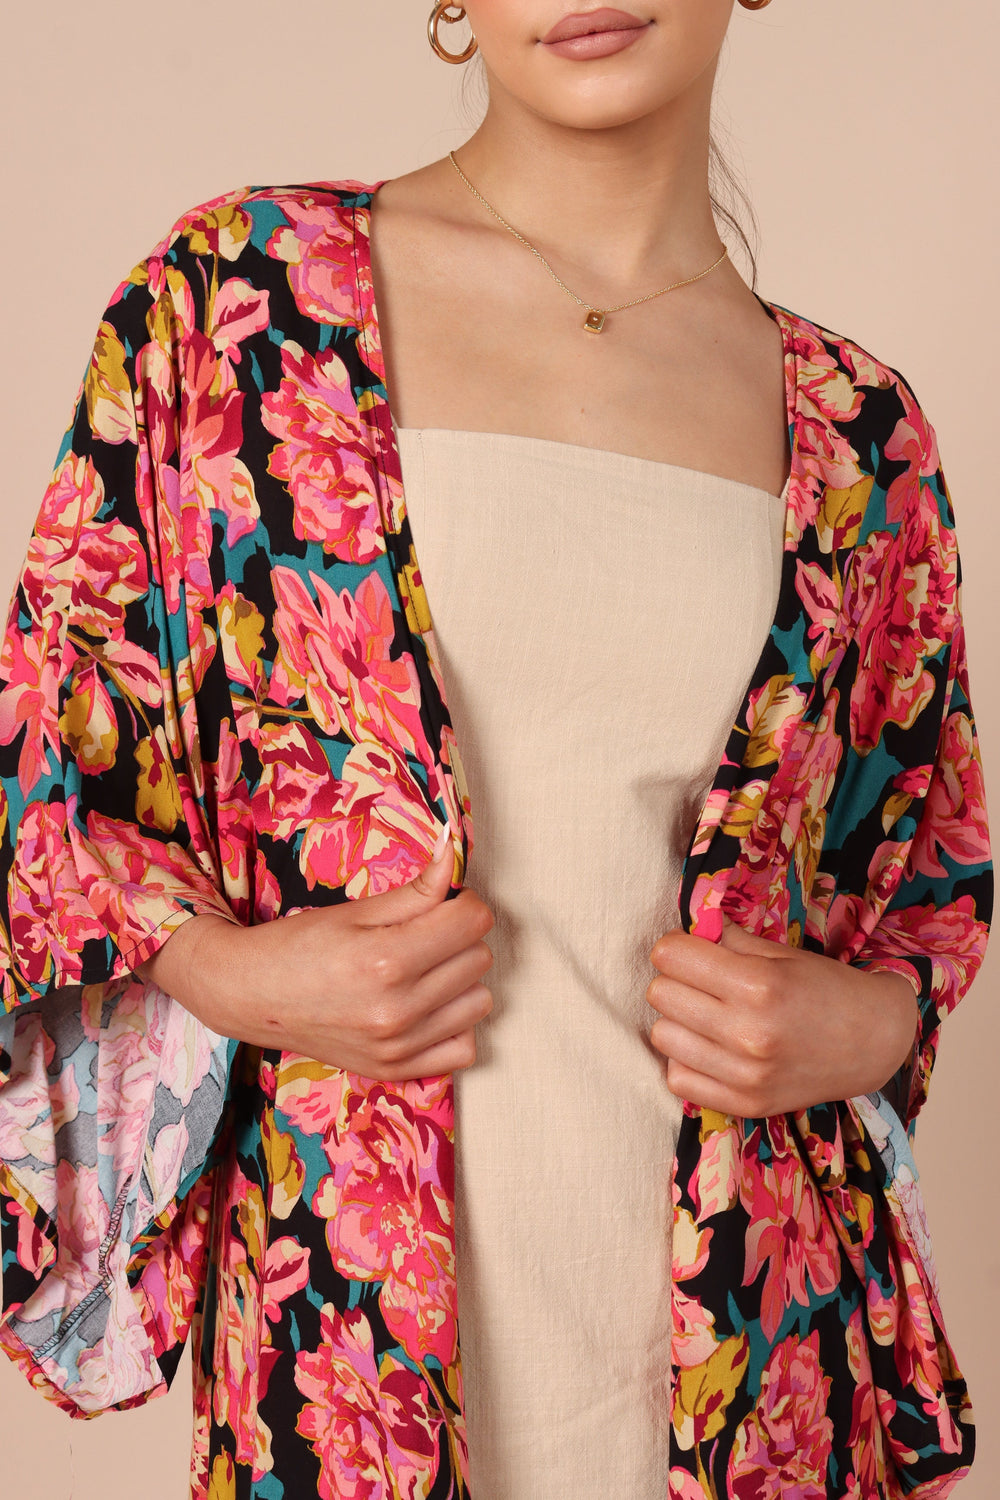 OUTERWEAR Mishka Kimono - Teal Floral